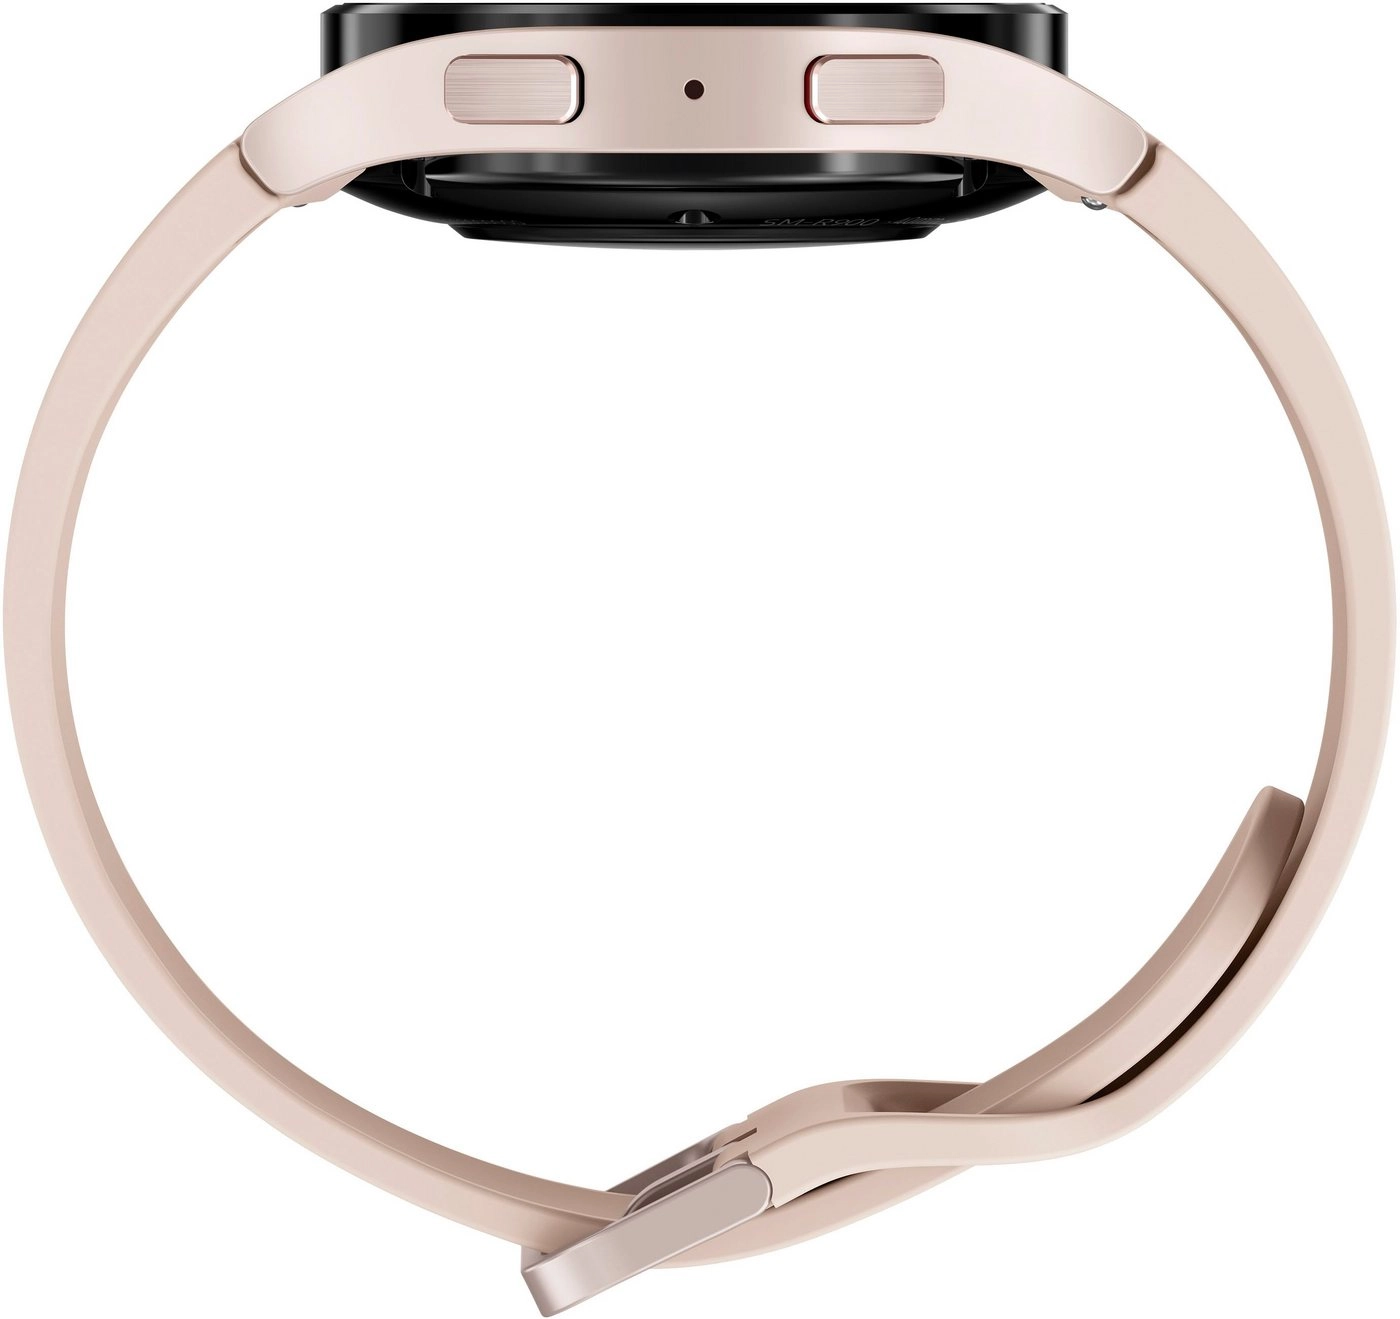 Samsung Galaxy Watch 5 (40mm) in gold | Smartwatch | Bis zu 80 Stunden Akkulaufzeit | Wassergeschützt bis 5 ATM | Blutdruck-Messung | Sturzerkennung